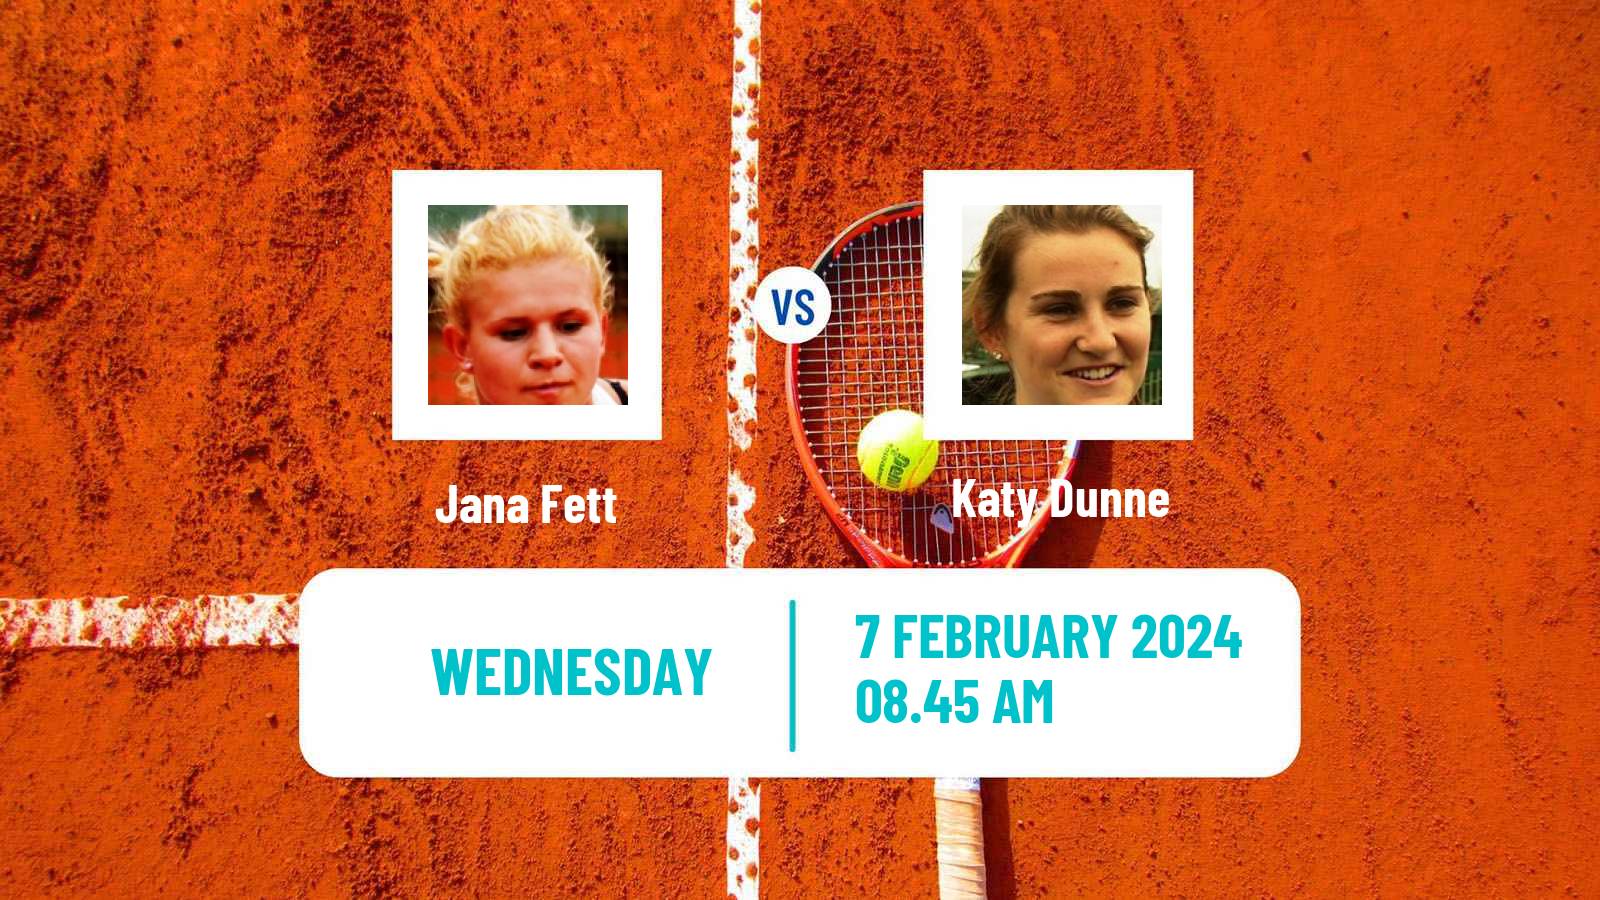 Tennis ITF W50 Edgbaston Women Jana Fett - Katy Dunne